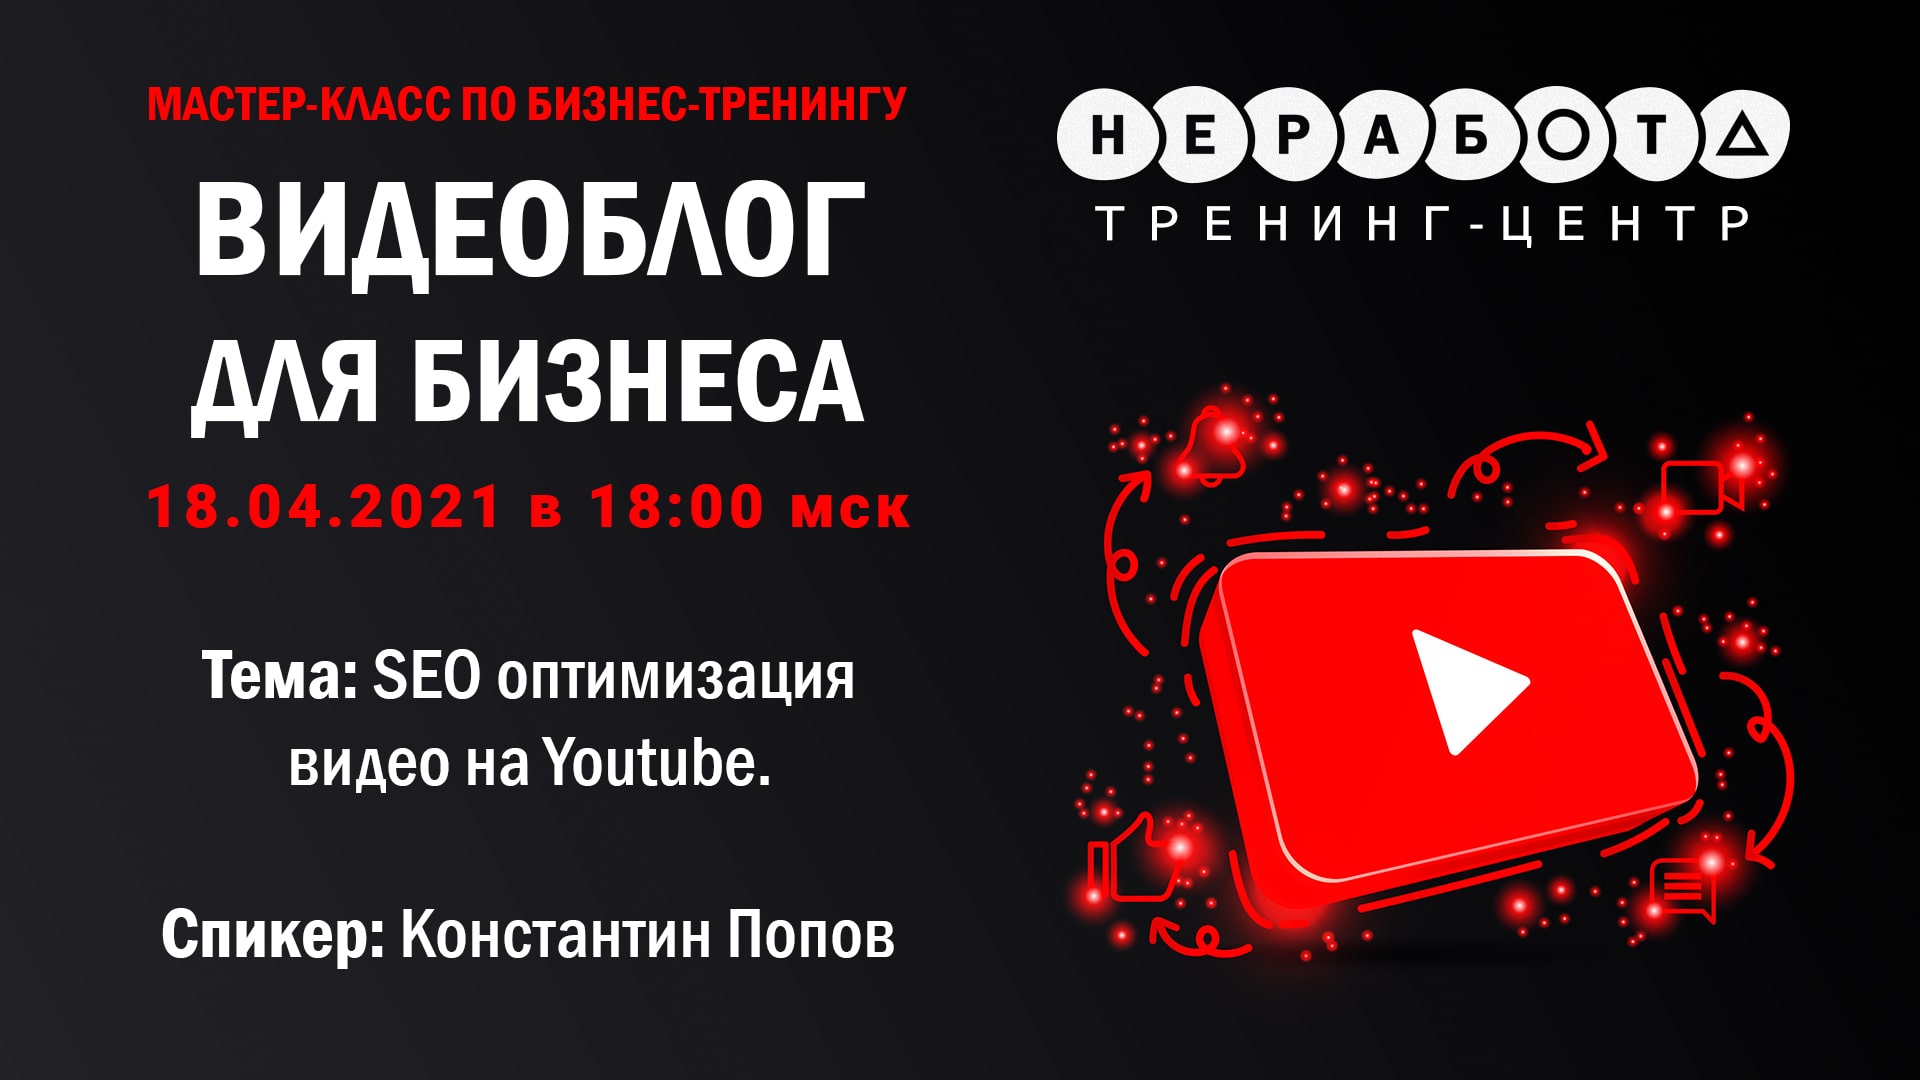 Мастер-класс по бизнес-тренингу
“Видеоблог для бизнеса” | 18.04.2021 в 18:00 мск